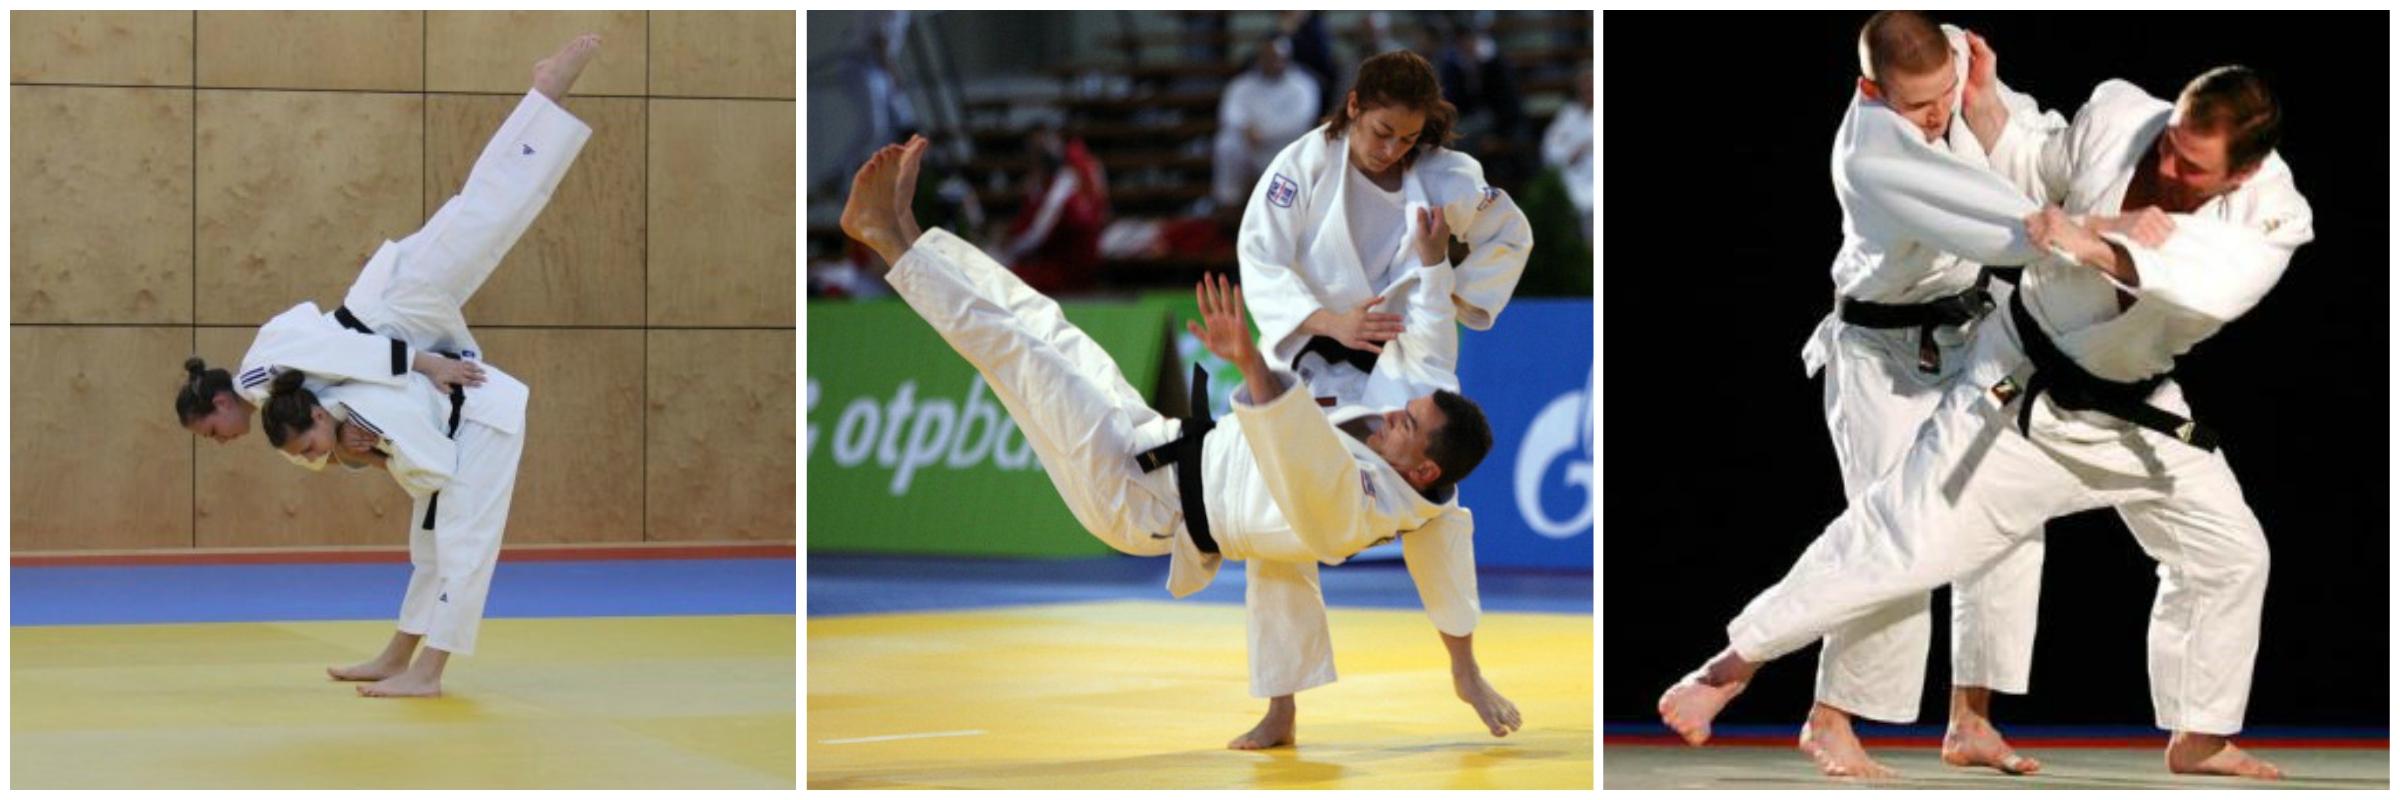 Μαθήματα Kendo και Judo στο Μύλο του Παππά